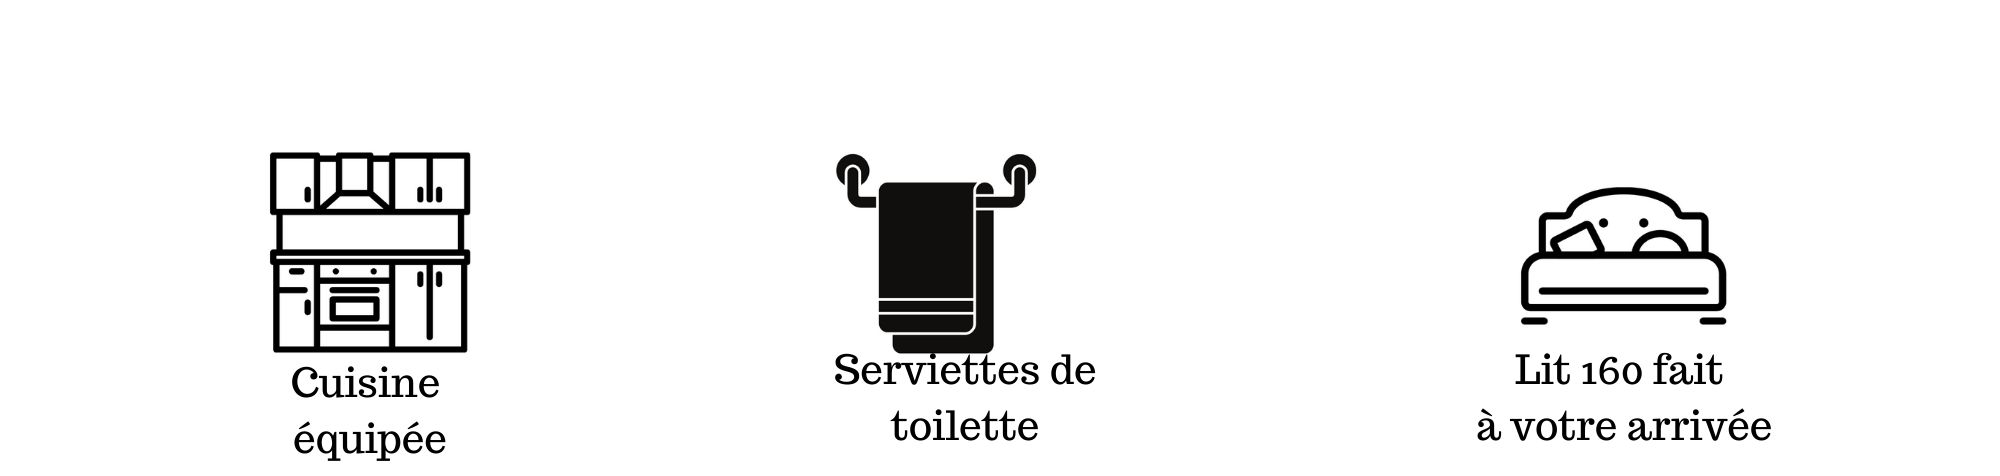 L Escale Sud Gironde Des services aux petits soins